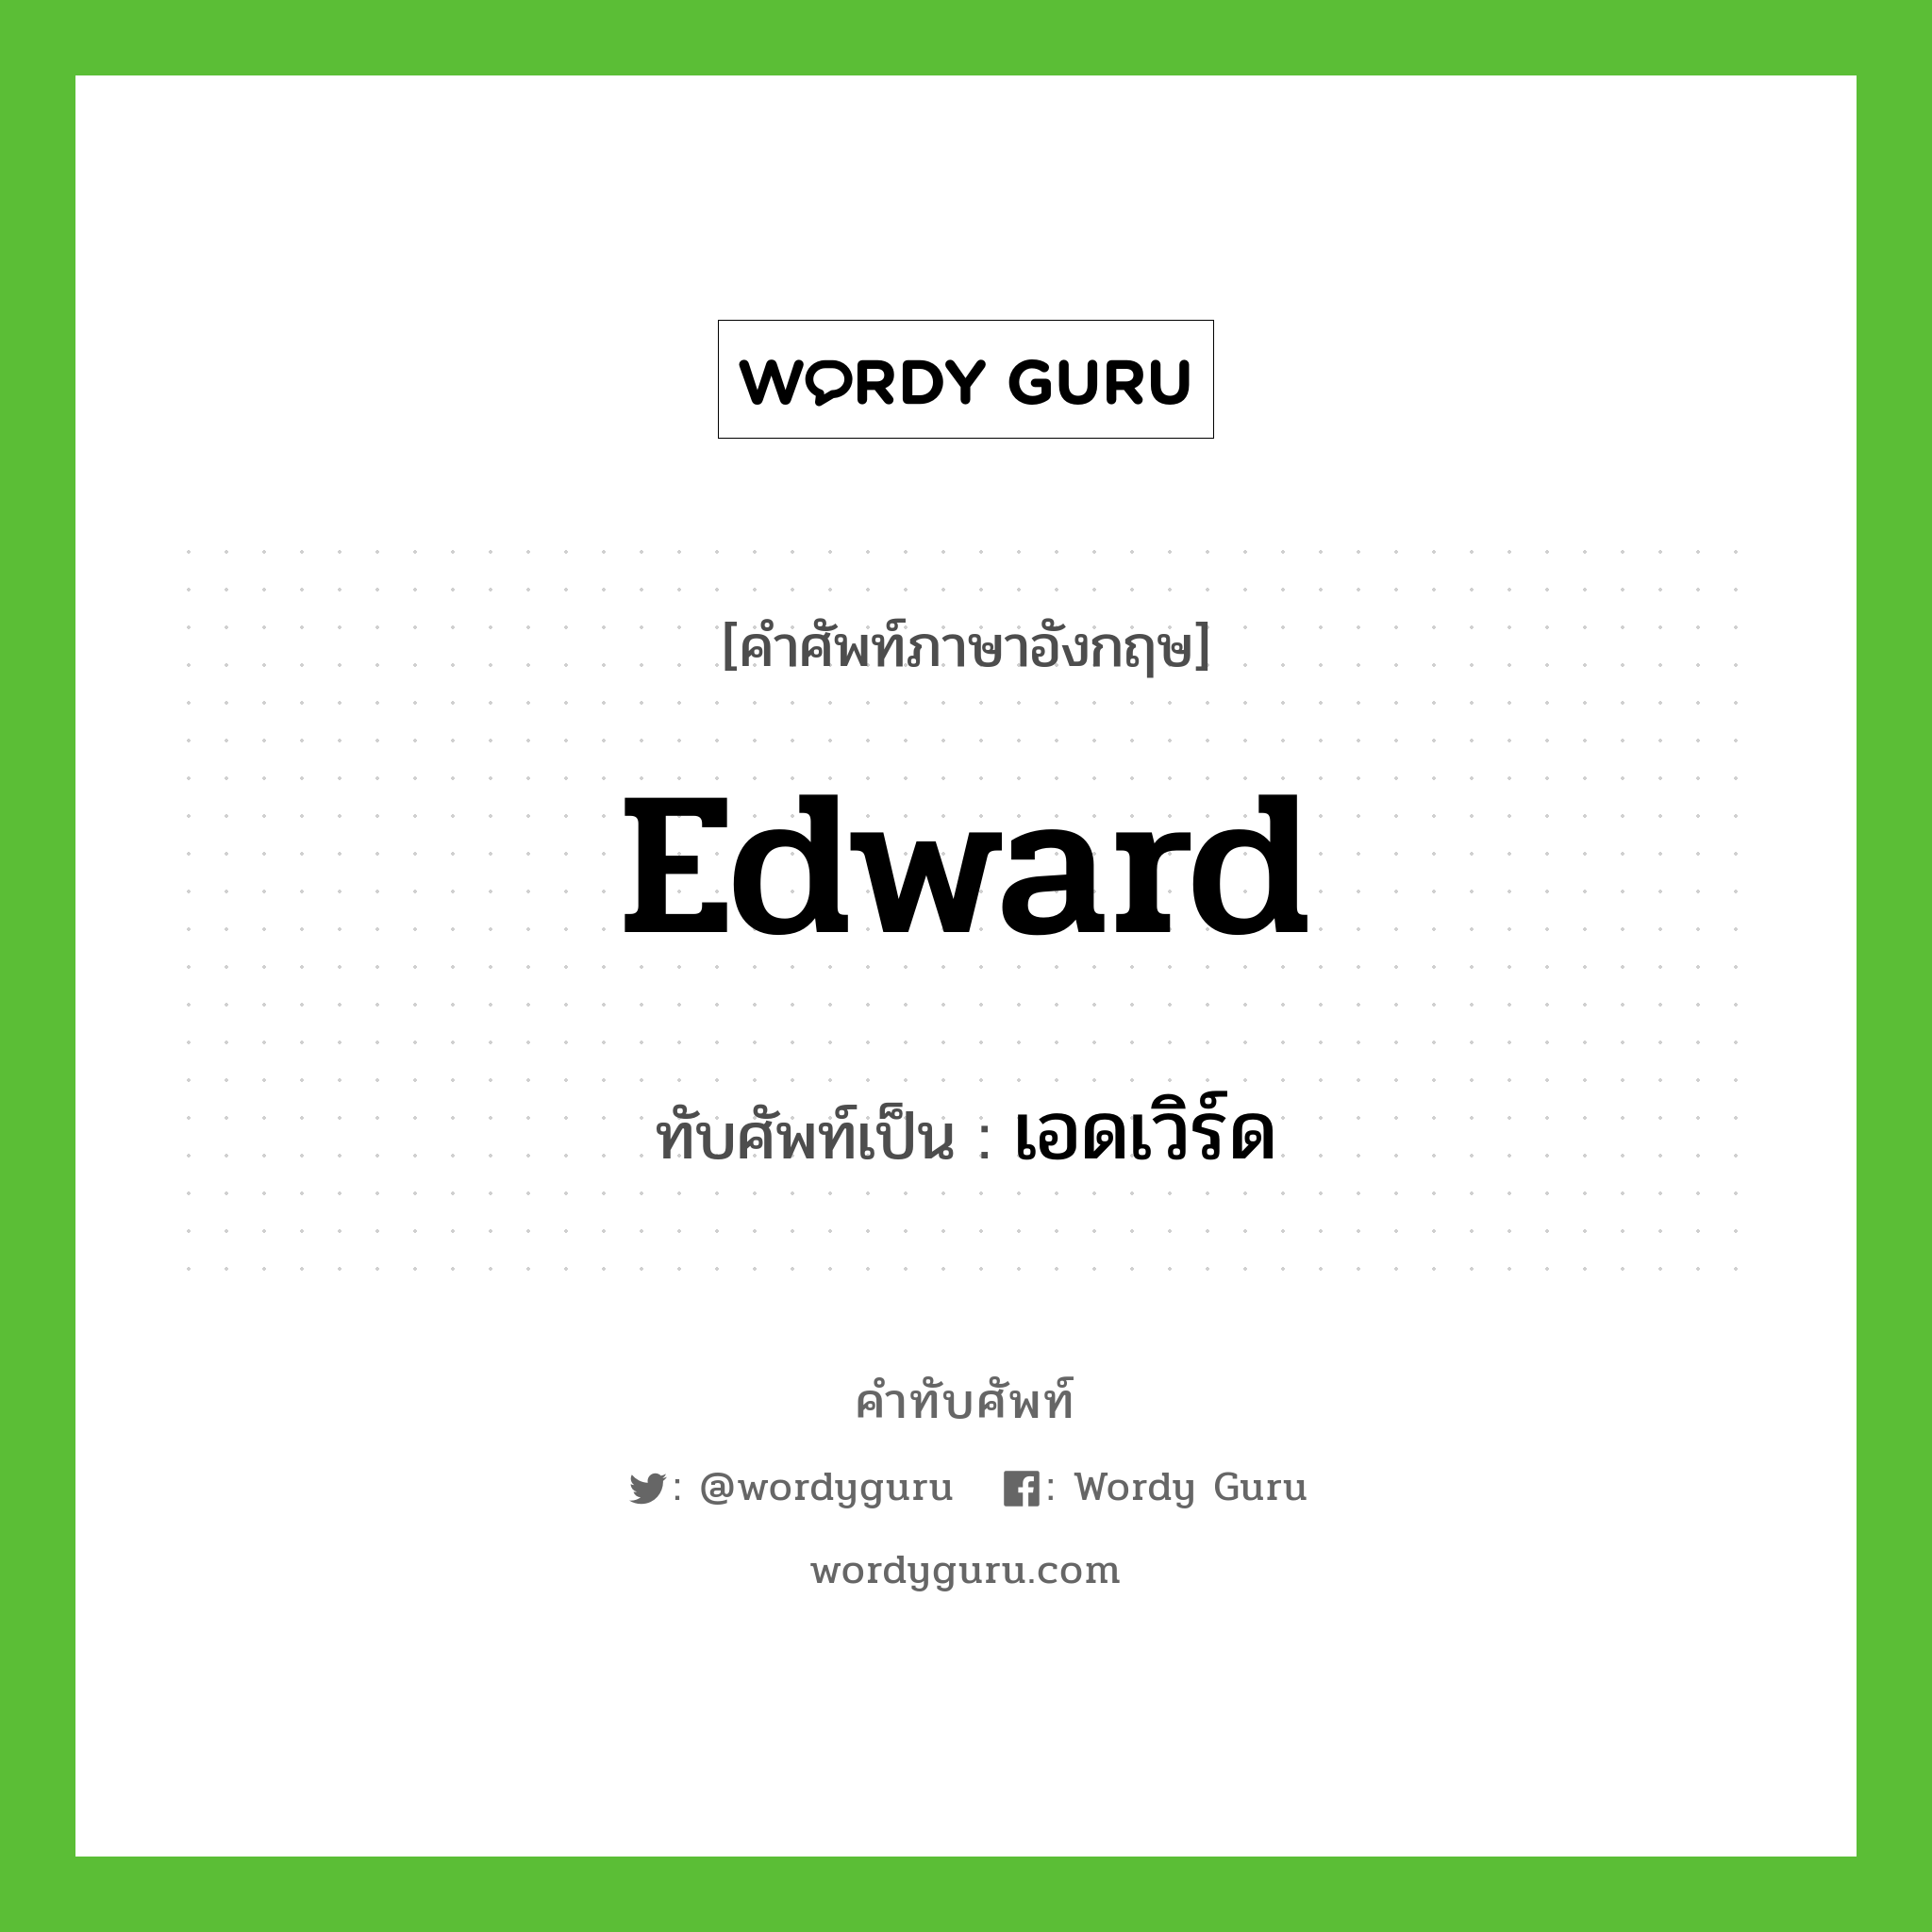 Edward เขียนเป็นคำไทยว่าอะไร?, คำศัพท์ภาษาอังกฤษ Edward ทับศัพท์เป็น เอดเวิร์ด